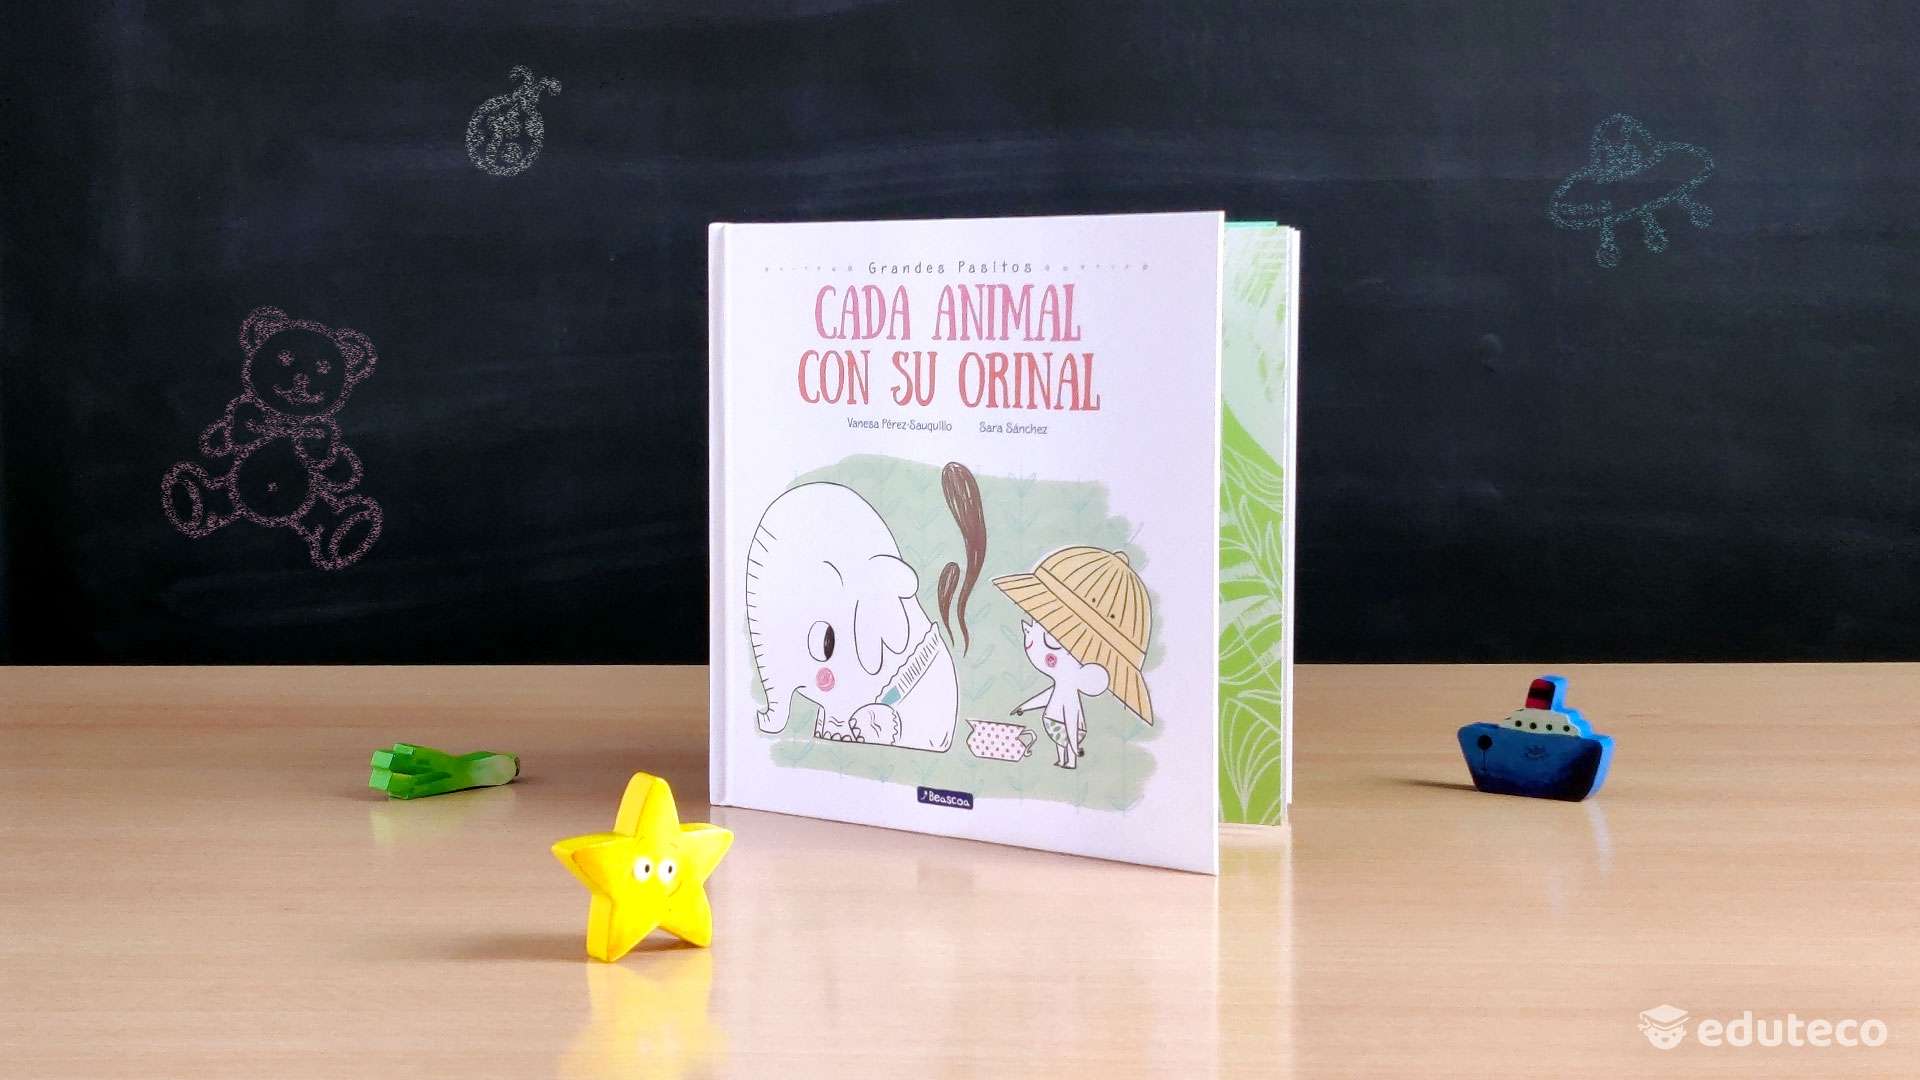 Libro Cada animal con su orinal - 9788448849757 - Pérez-Sauquillo, Vanesa -  Librerías Crisol